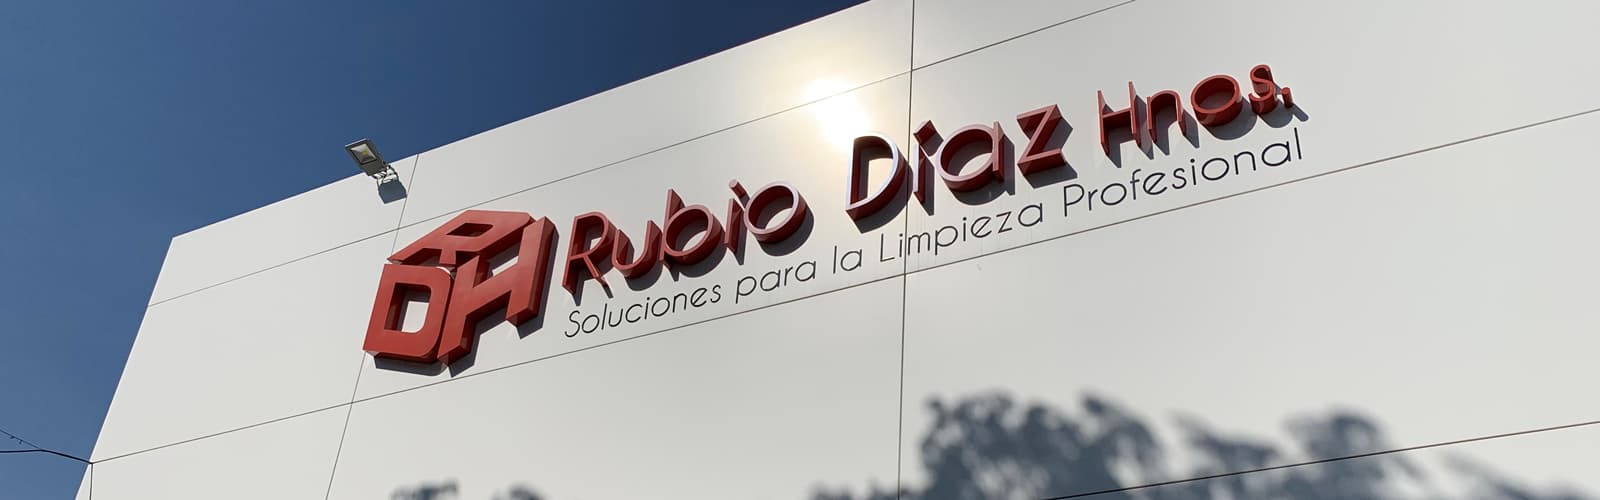 Empresa - Rubio Díaz Hnos